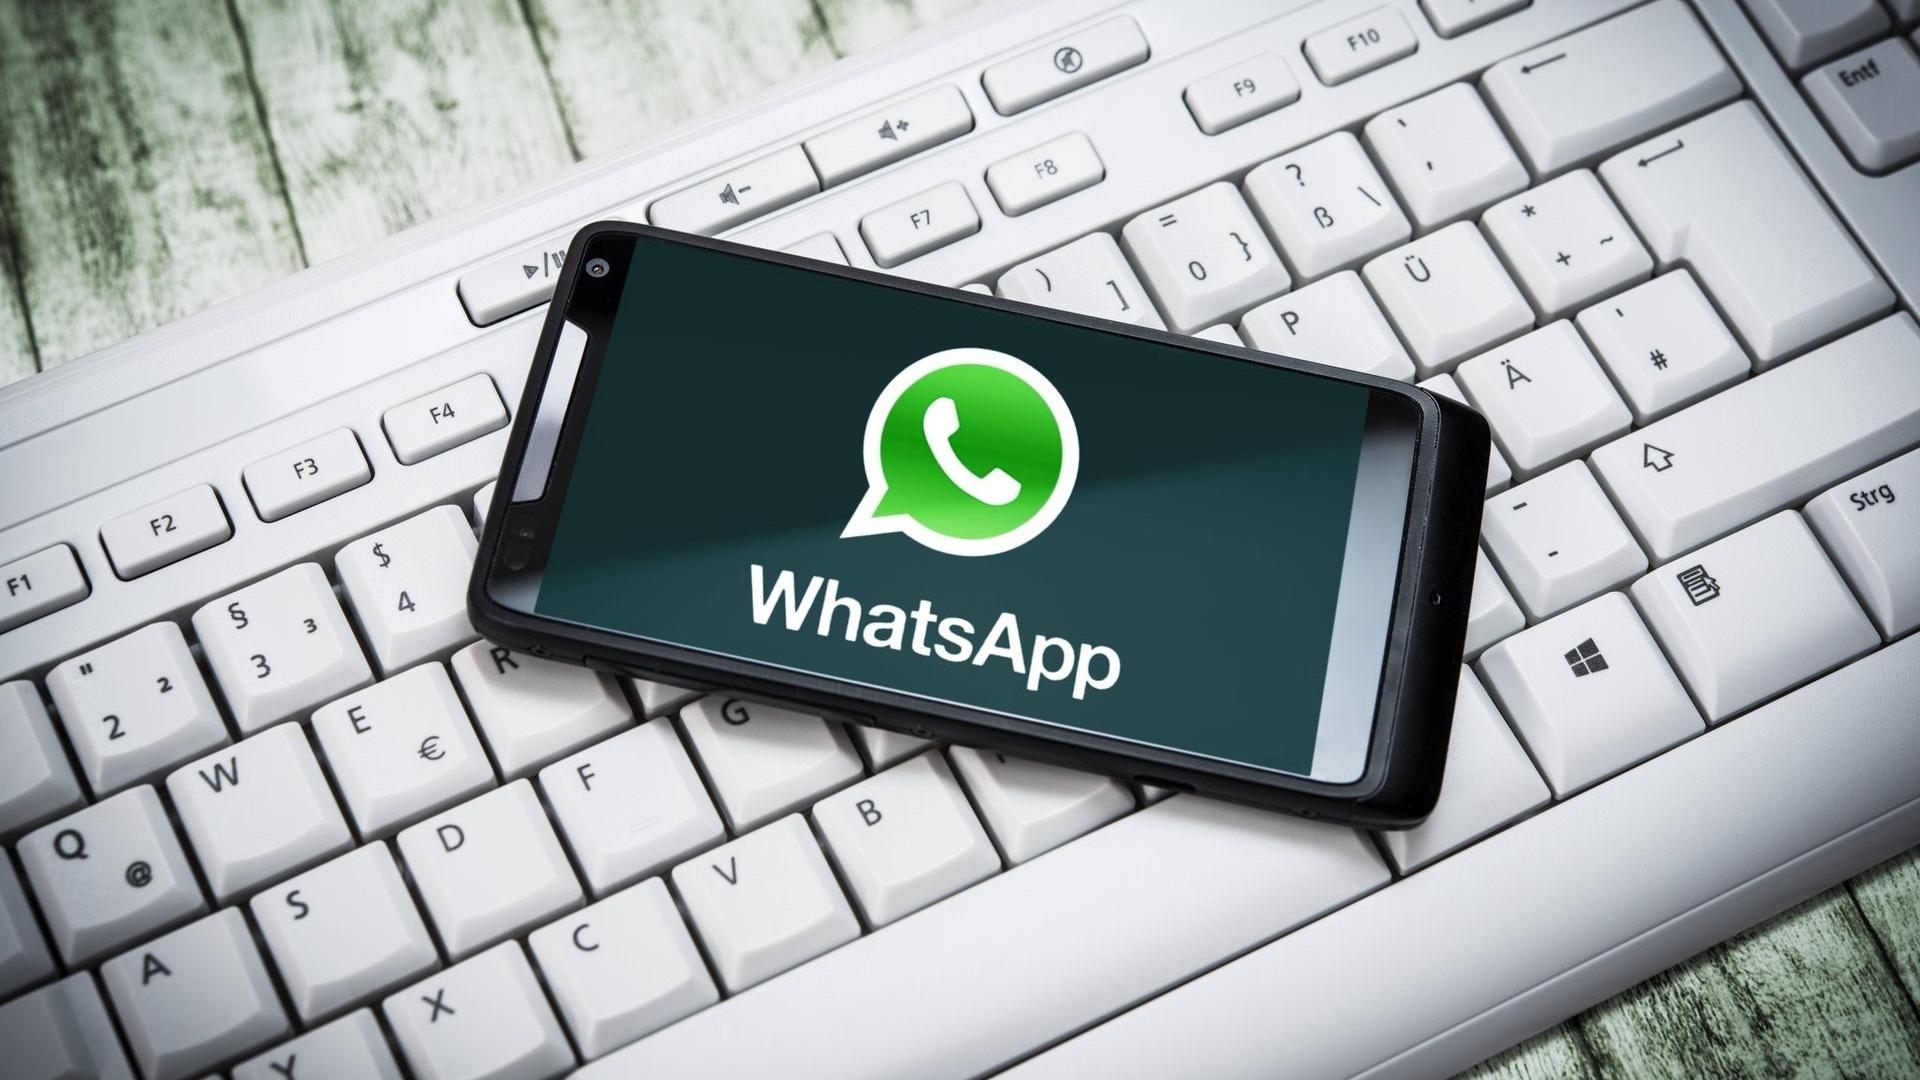 WhatsApp kullanıcıları dikkat! Artık o telefonlarda WP kullanamayacaksınız